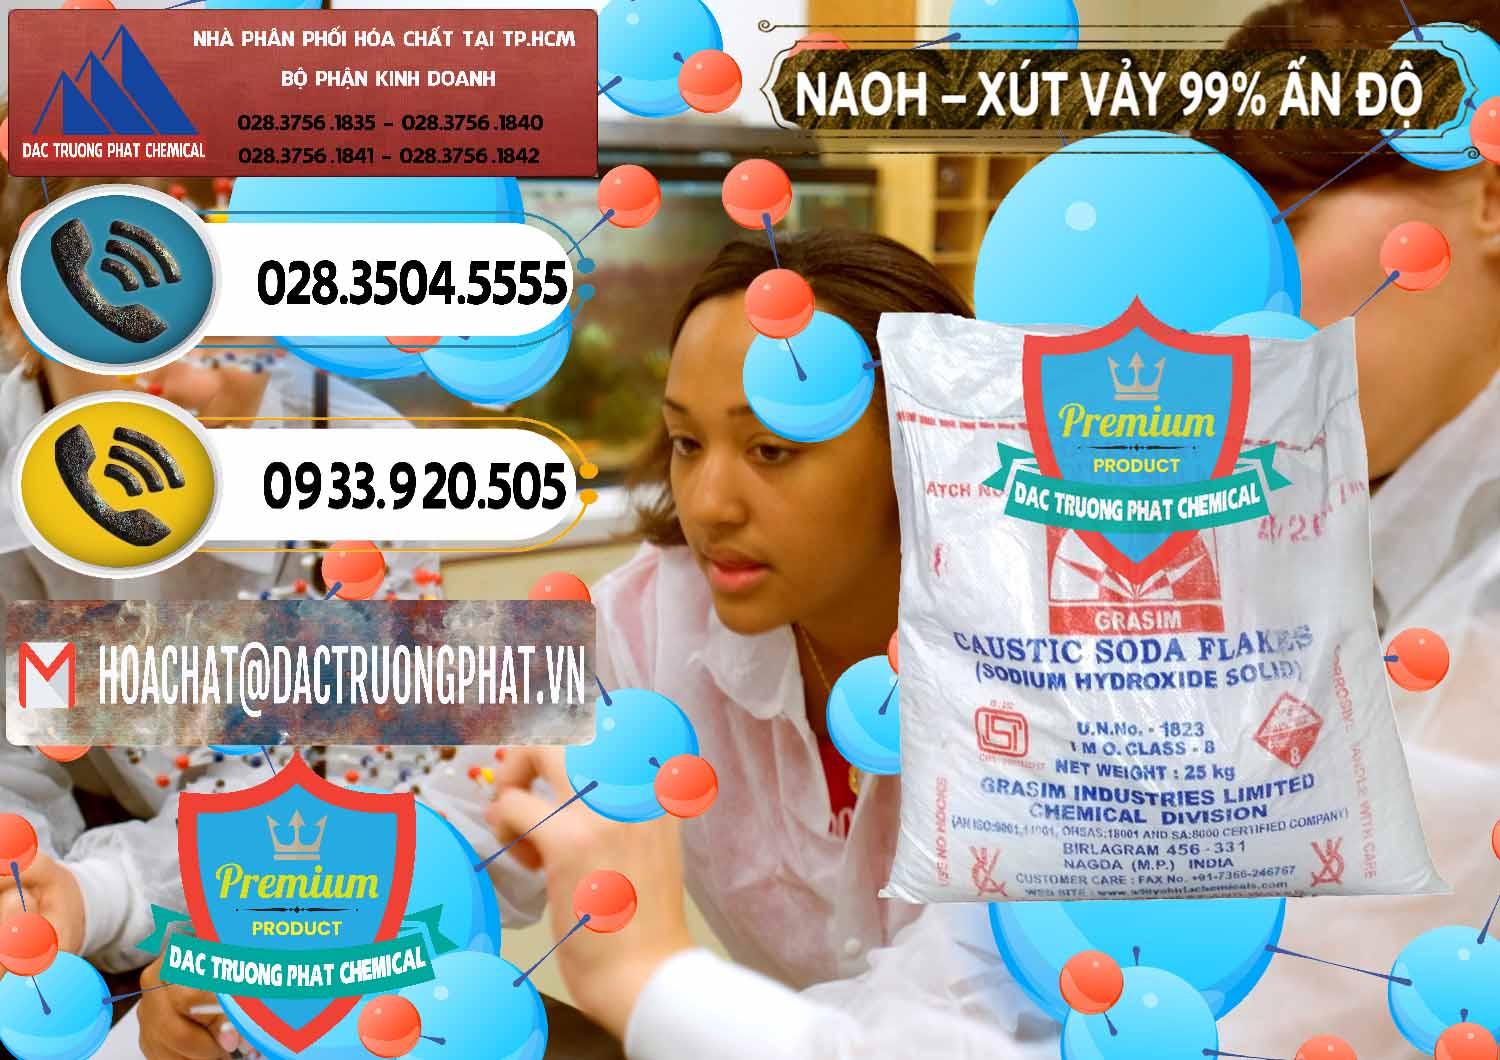 Đơn vị kinh doanh _ bán Xút Vảy - NaOH Vảy 99% Aditya Birla Grasim Ấn Độ India - 0171 - Nơi cung cấp & phân phối hóa chất tại TP.HCM - hoachatdetnhuom.vn